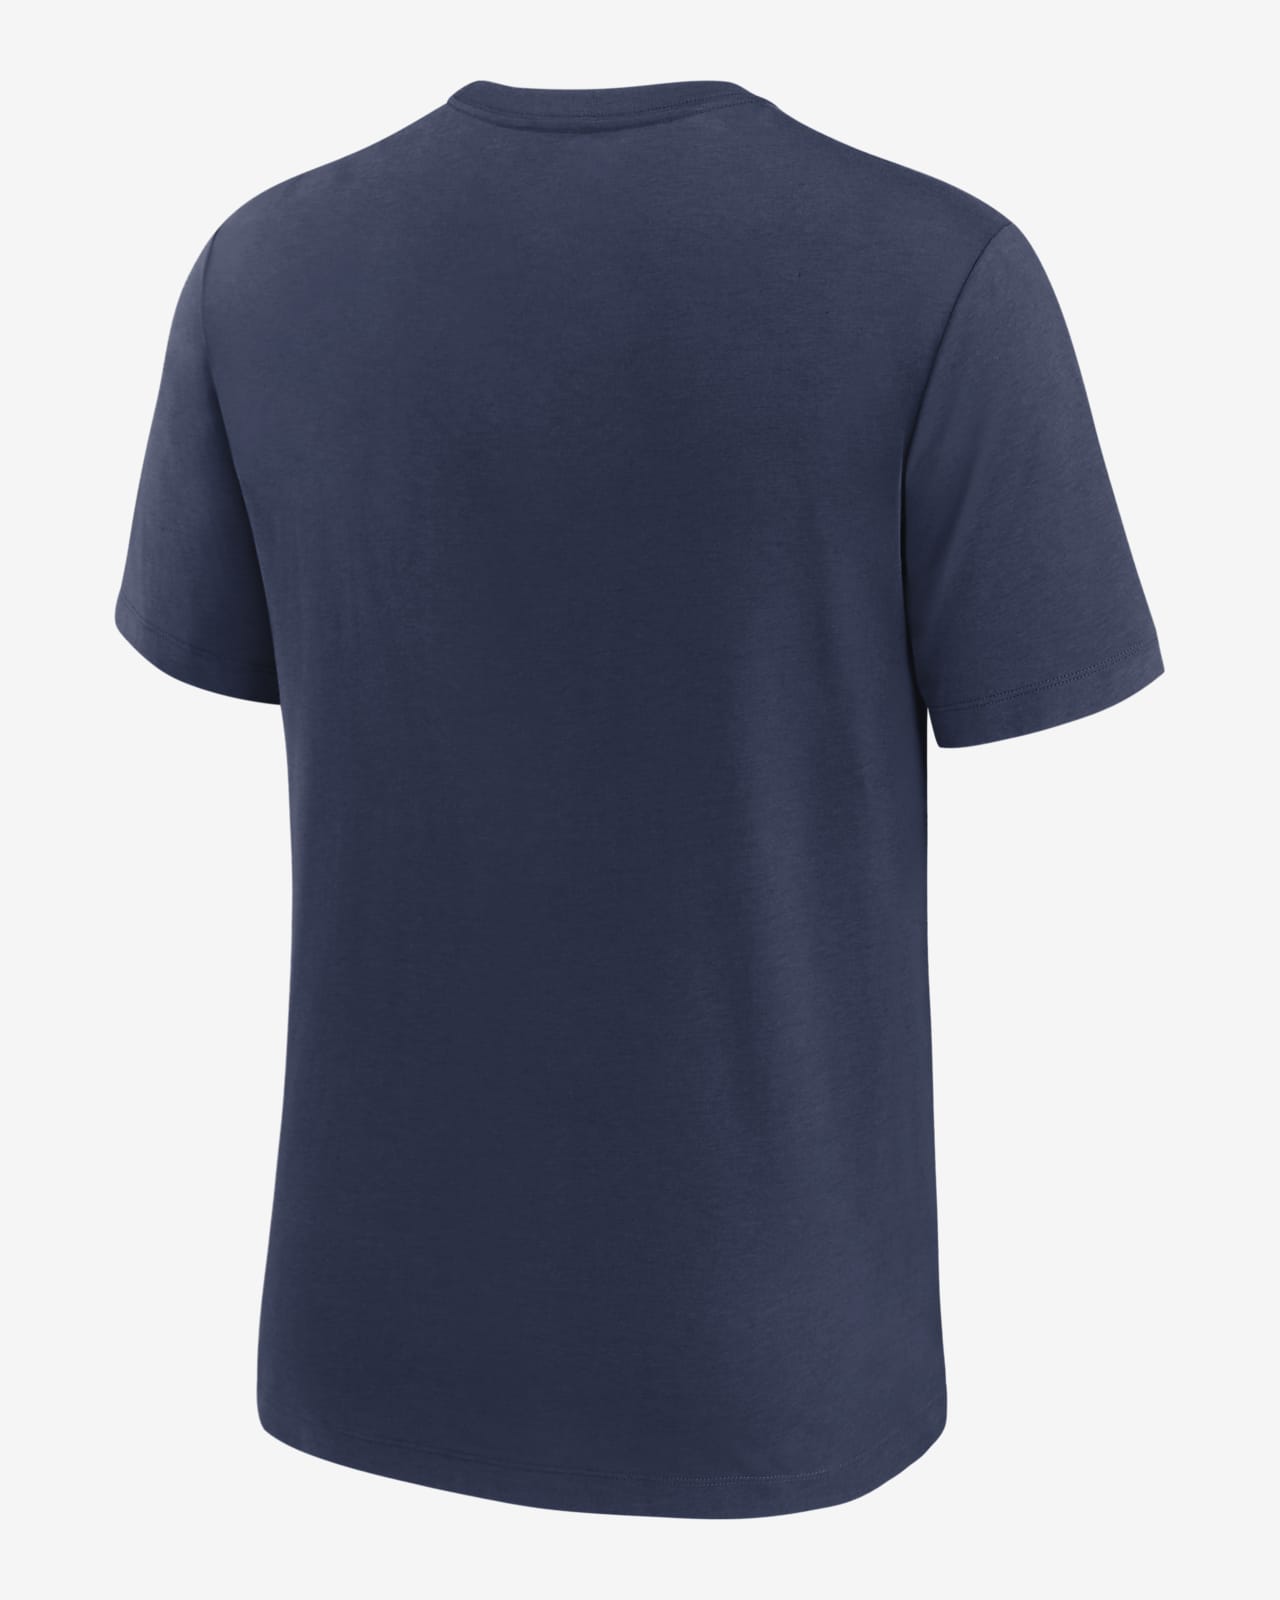 Nike Rewind Retro (MLB Minnesota Twins) Men's T-Shirt